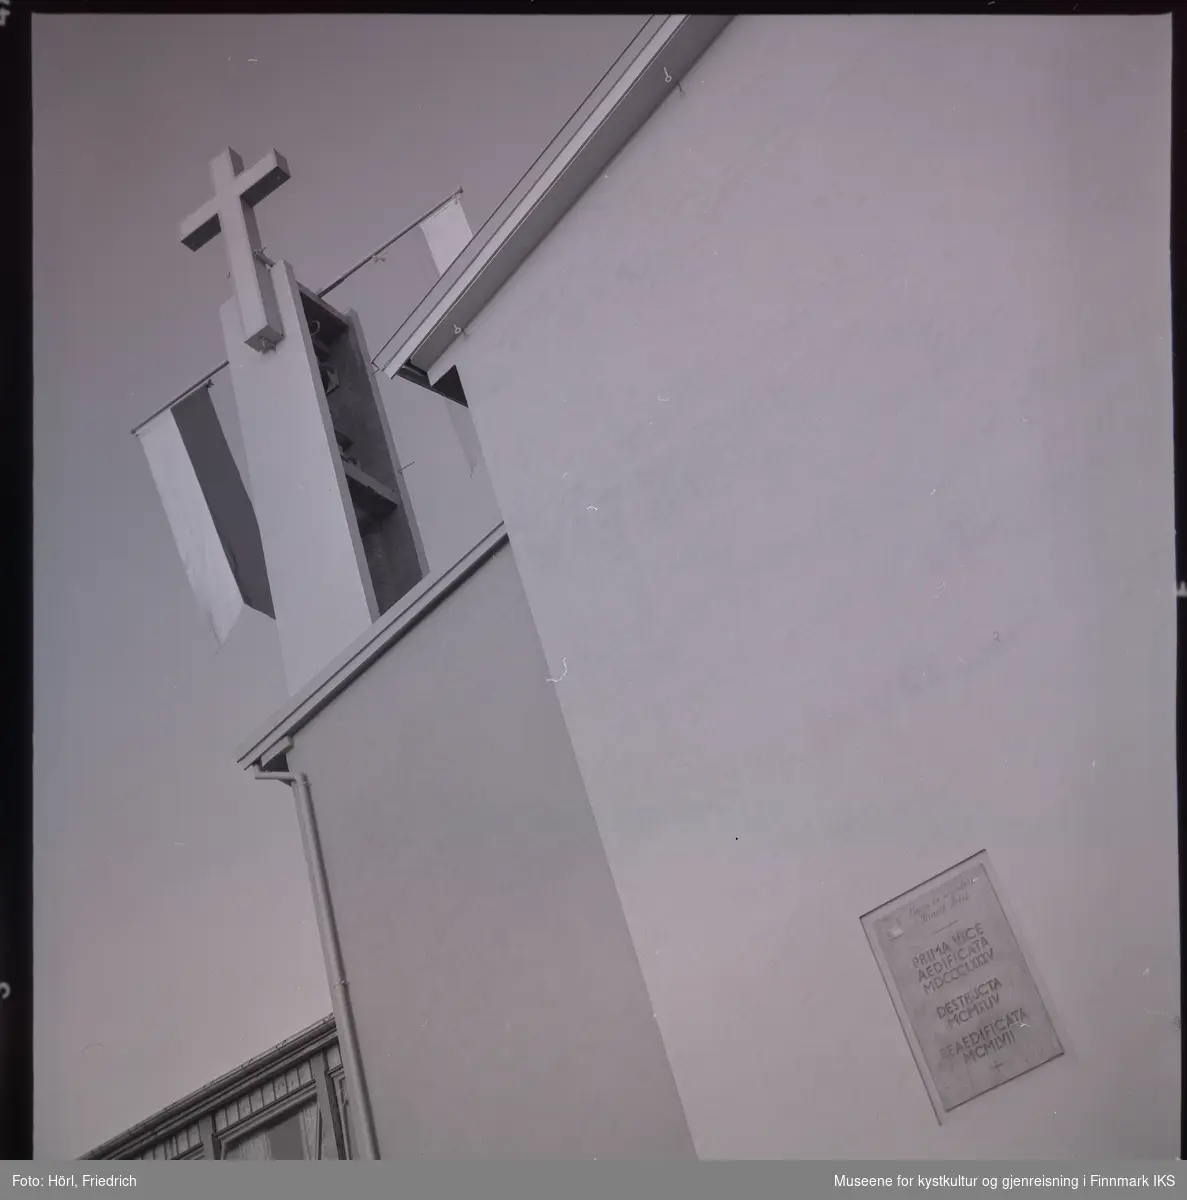 Ved klokketårnet til den katolske kirka St. Mikael i Hammerfest er det montert to stenger med vimpler. Det antas at dette ble gjort i anledning vigslingen den 3. august 1958. Ved kirkeveggen vises det en bronseplate med følgende inskripsjon.
"PRIMA VICE
AEDIFICATA (første gang bygget)
MDCCCLXXXV (1885)
DESTRUCTA (ødelagt)
MCMXLIV (1944)
REAEDIFICATA (gjenoppbygget)
MCMLVII (1957)"